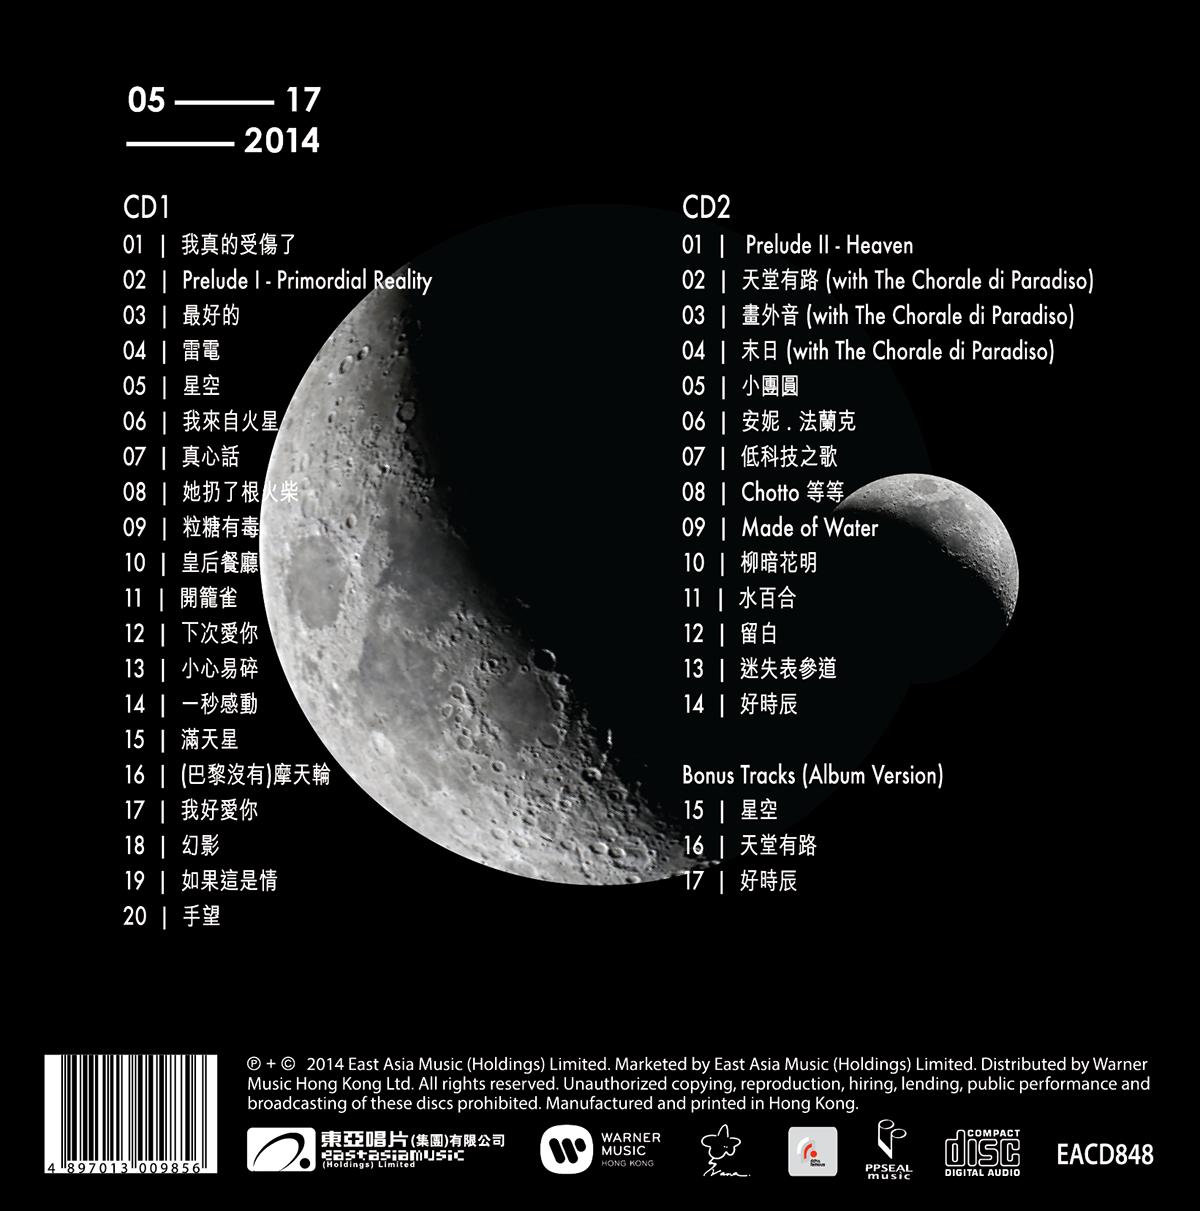 ivana wong concert cd